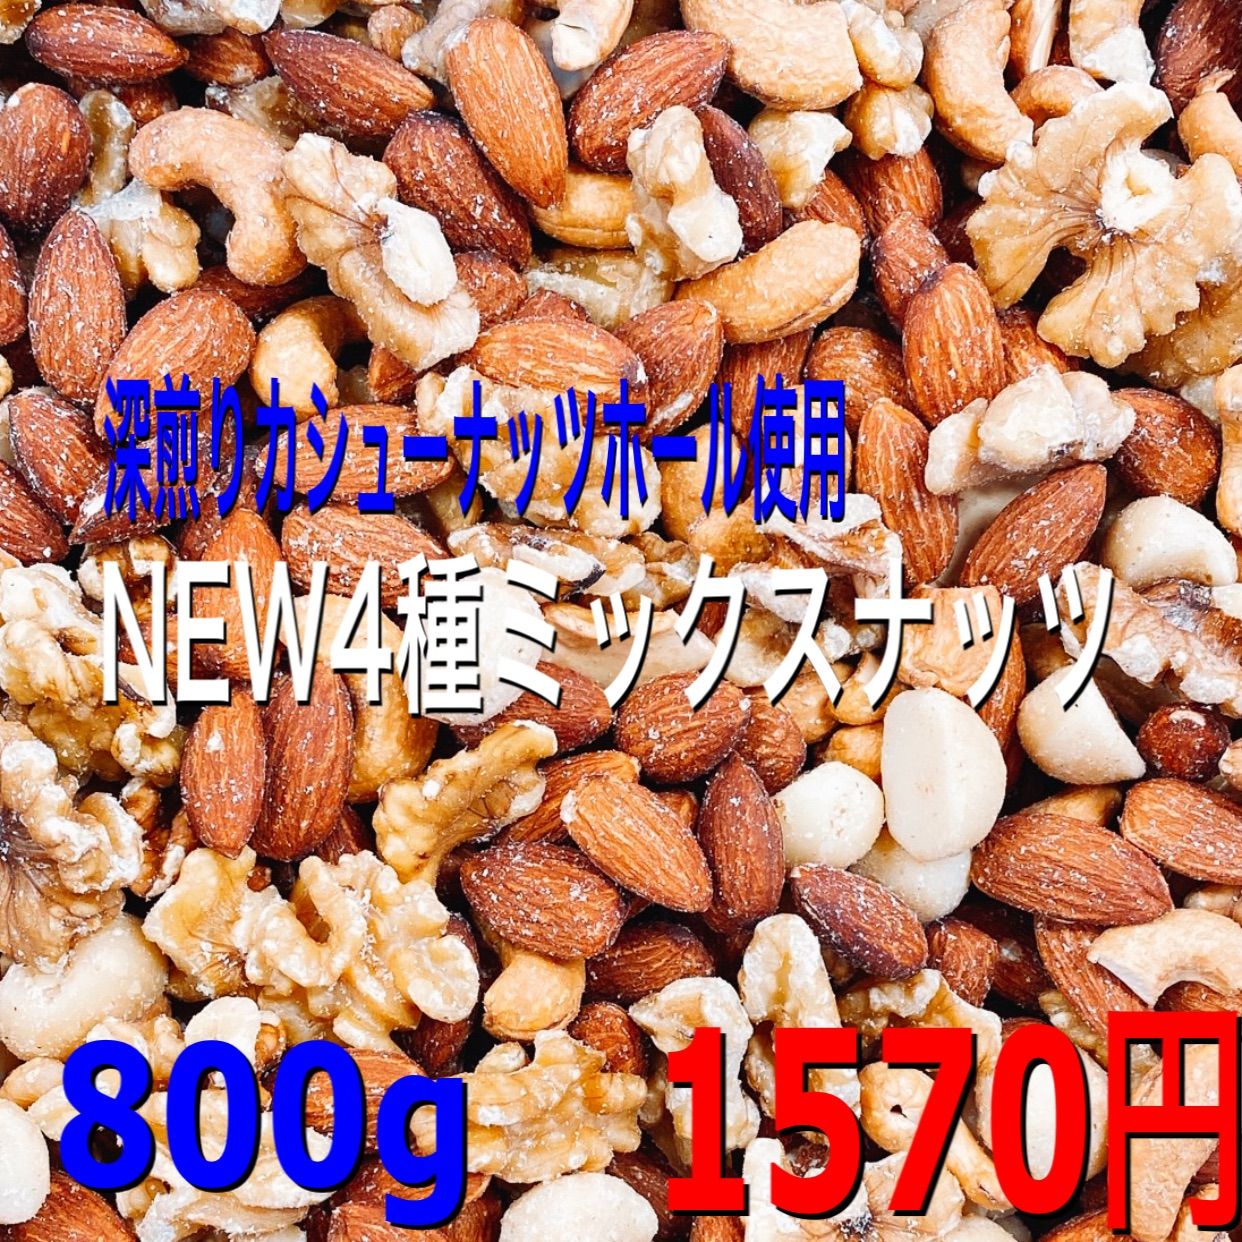 適当な価格 ナッツ専門店のアーモンドプードル500g 検索用 製菓 ミックスナッツ j